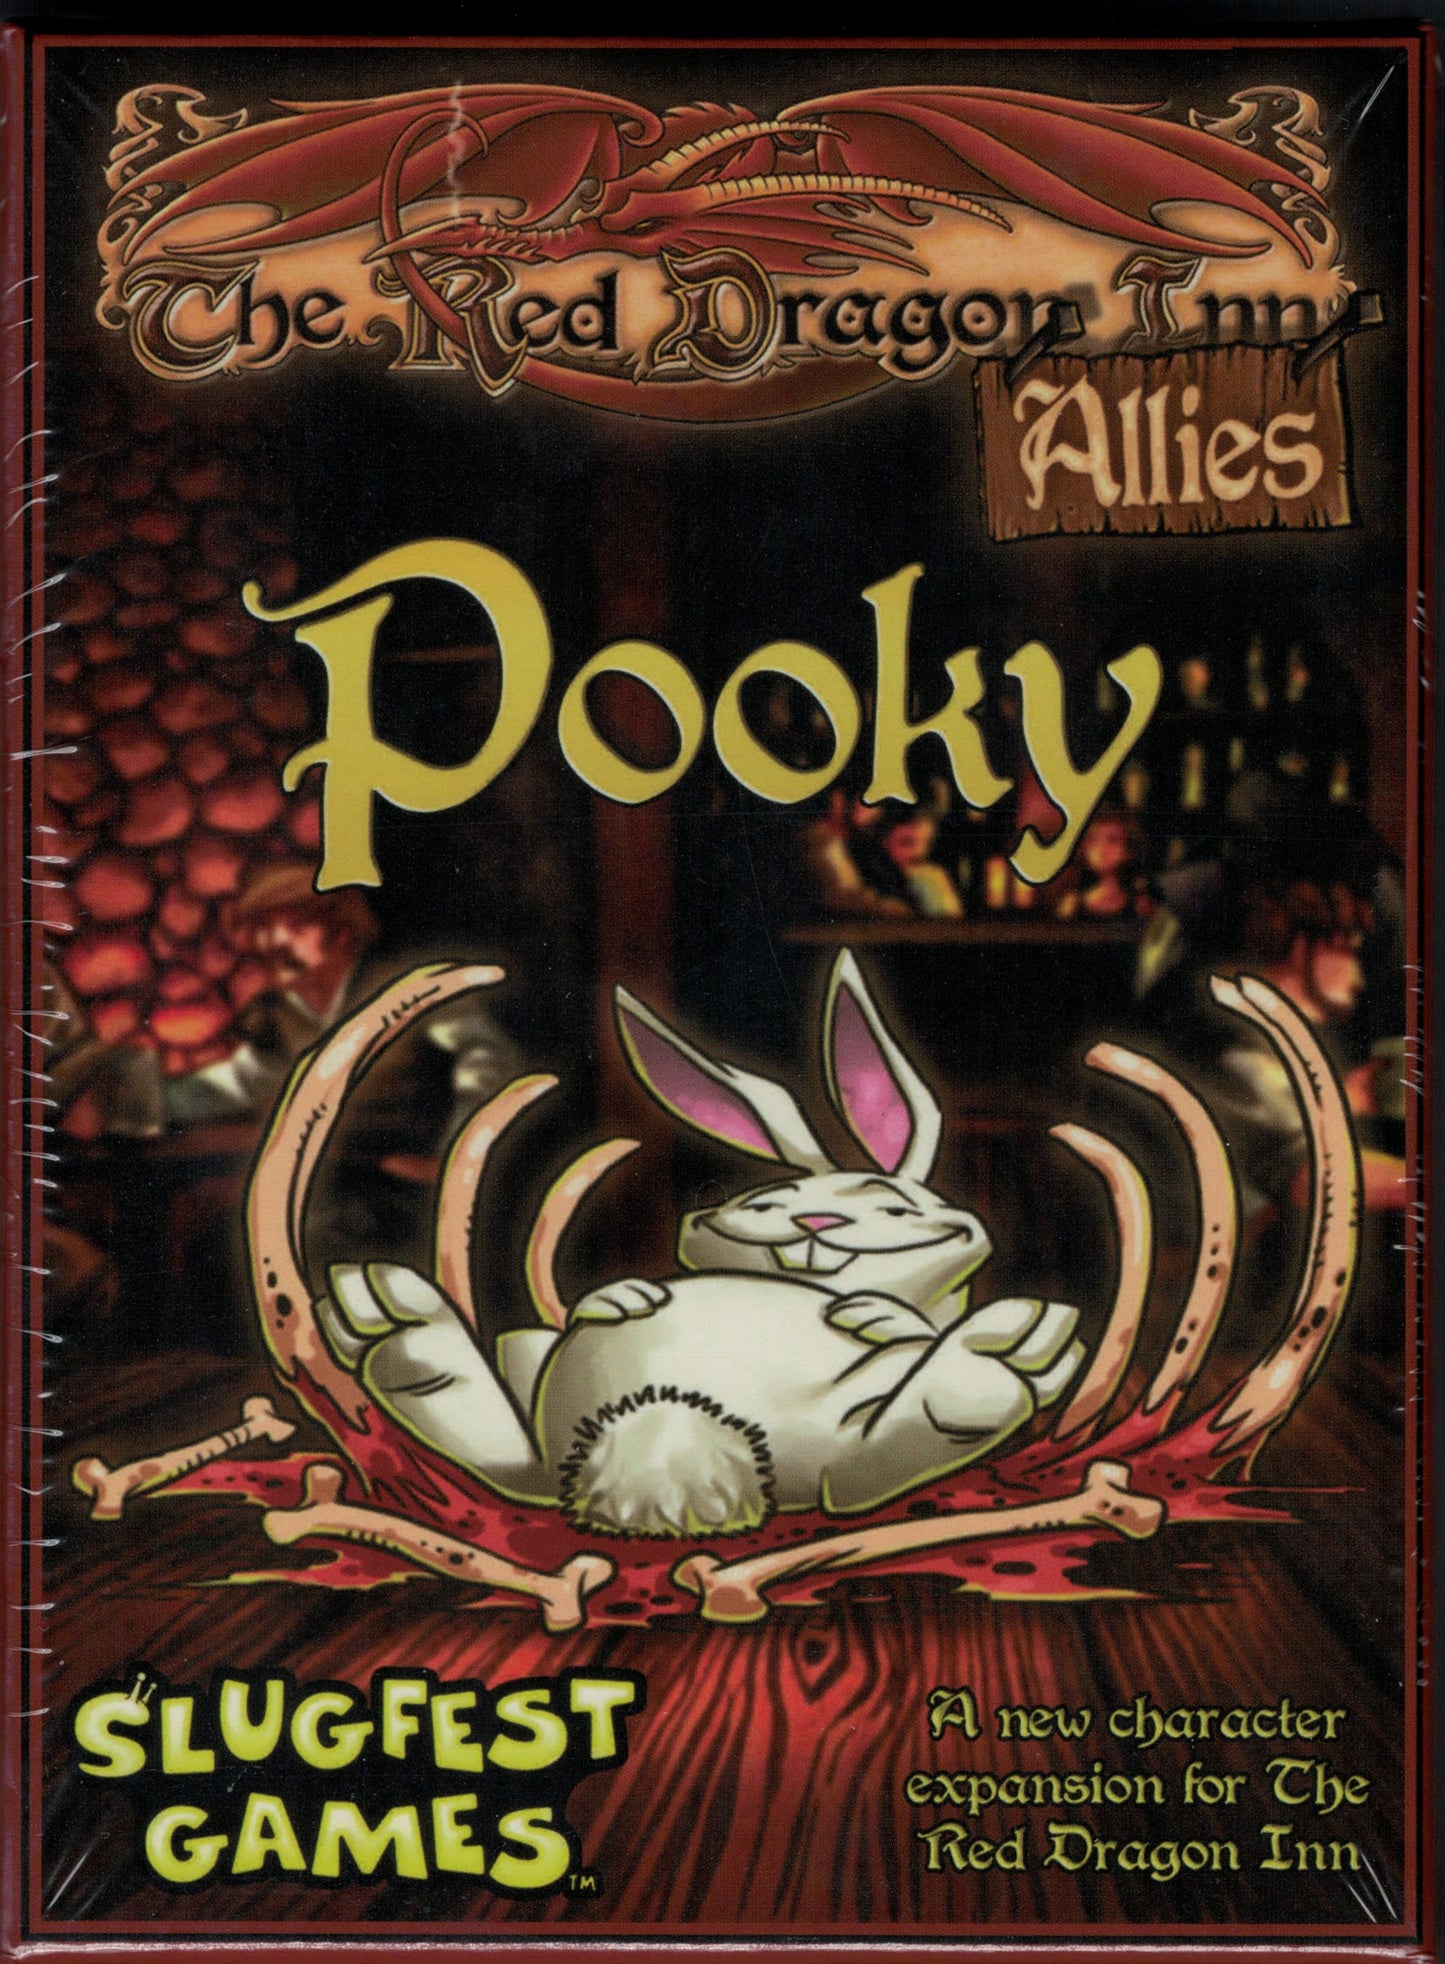 Red Dragon Inn Allies: Pooky